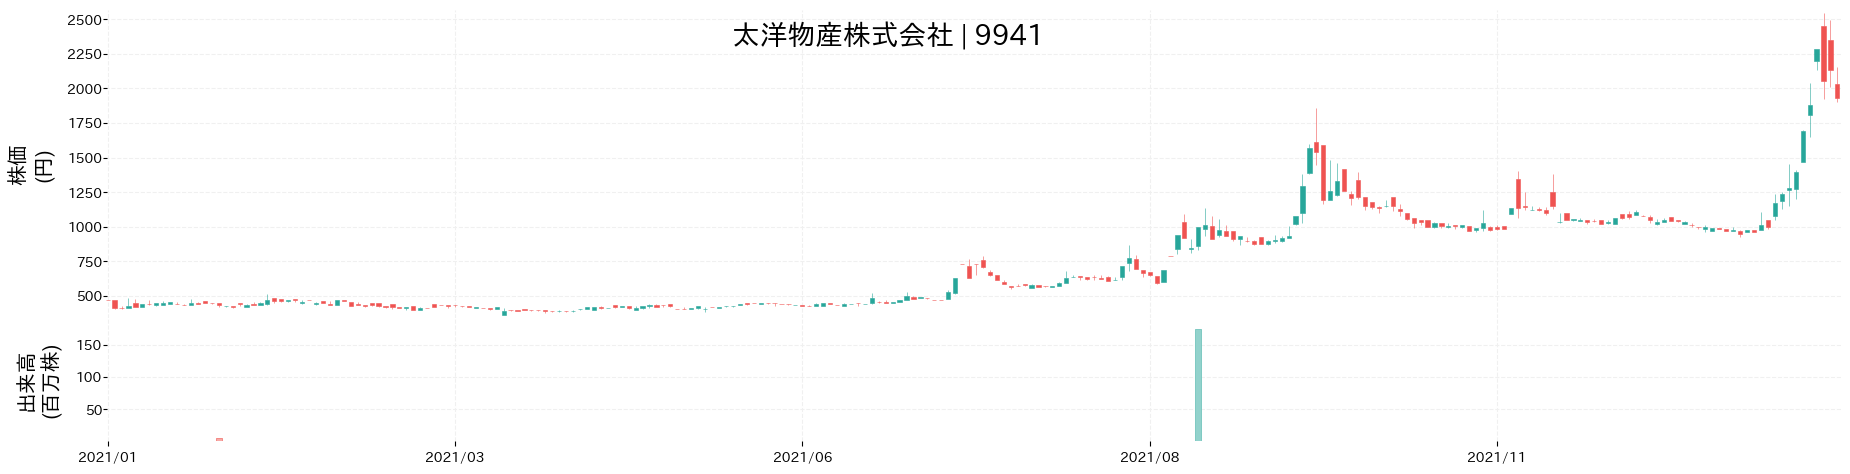 太洋物産の株価推移(2021)